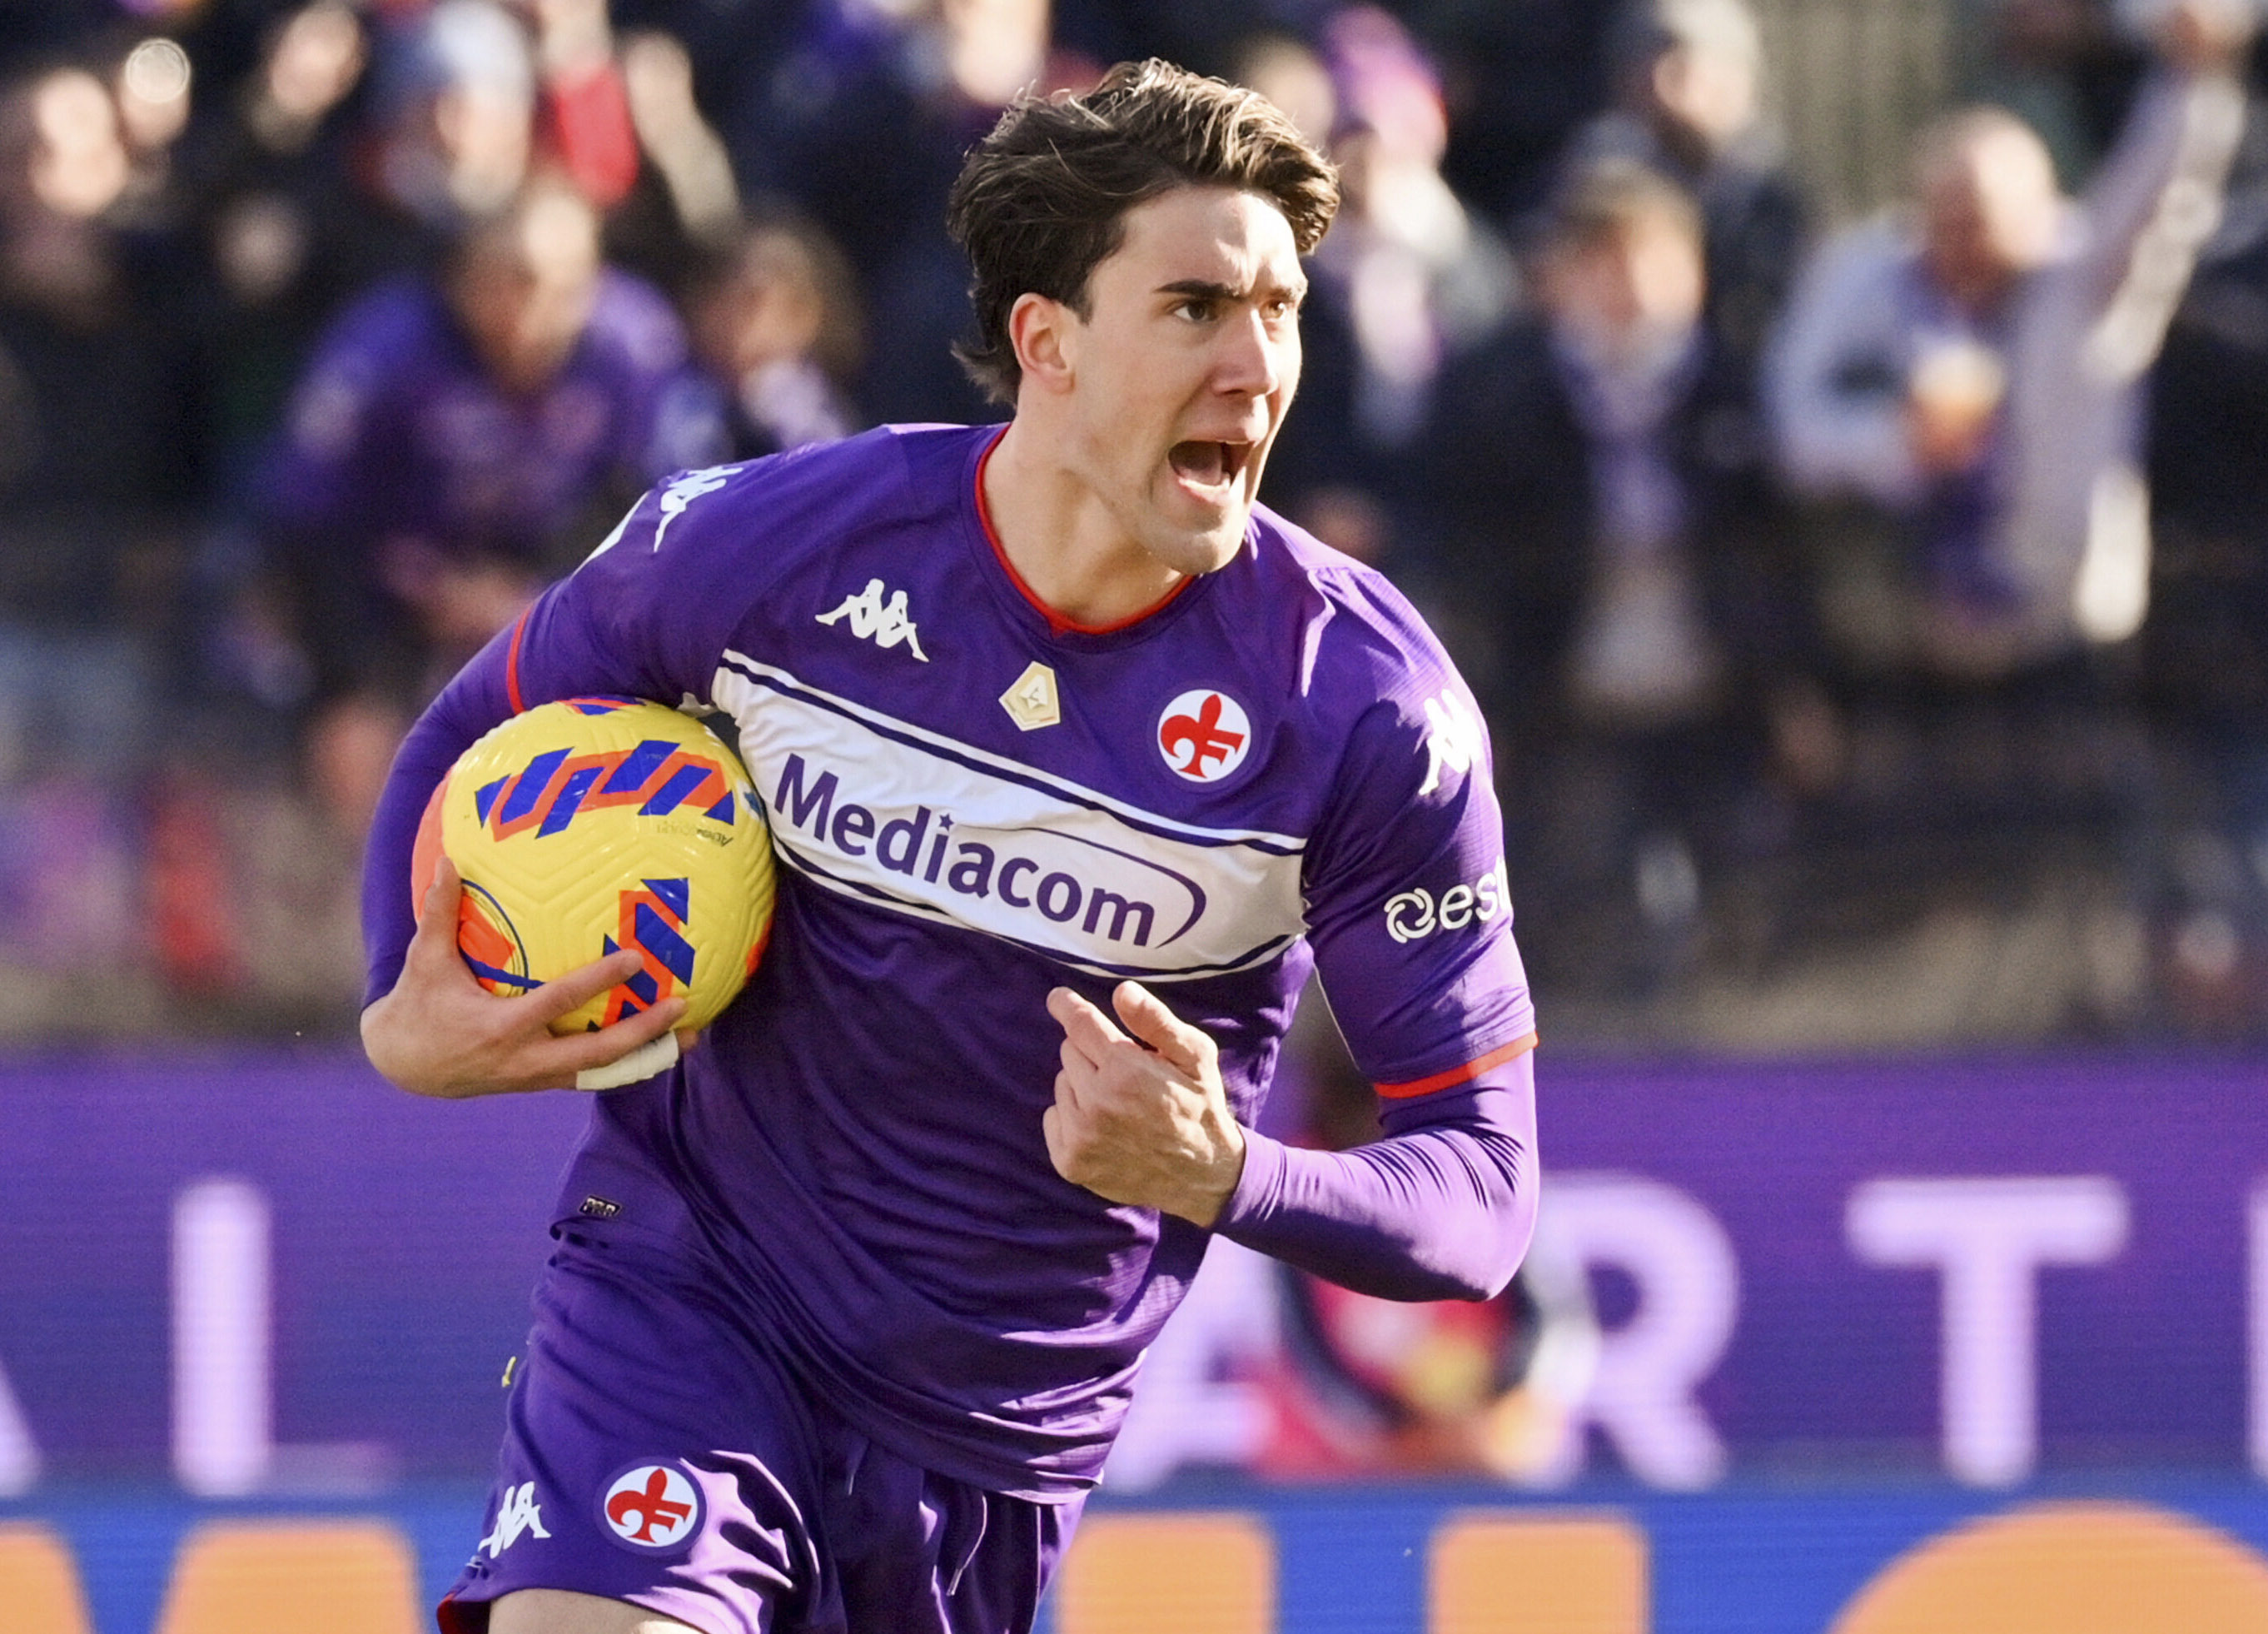 Fiorentinabossen om Vlahovic: ”Marknaden är öppen”